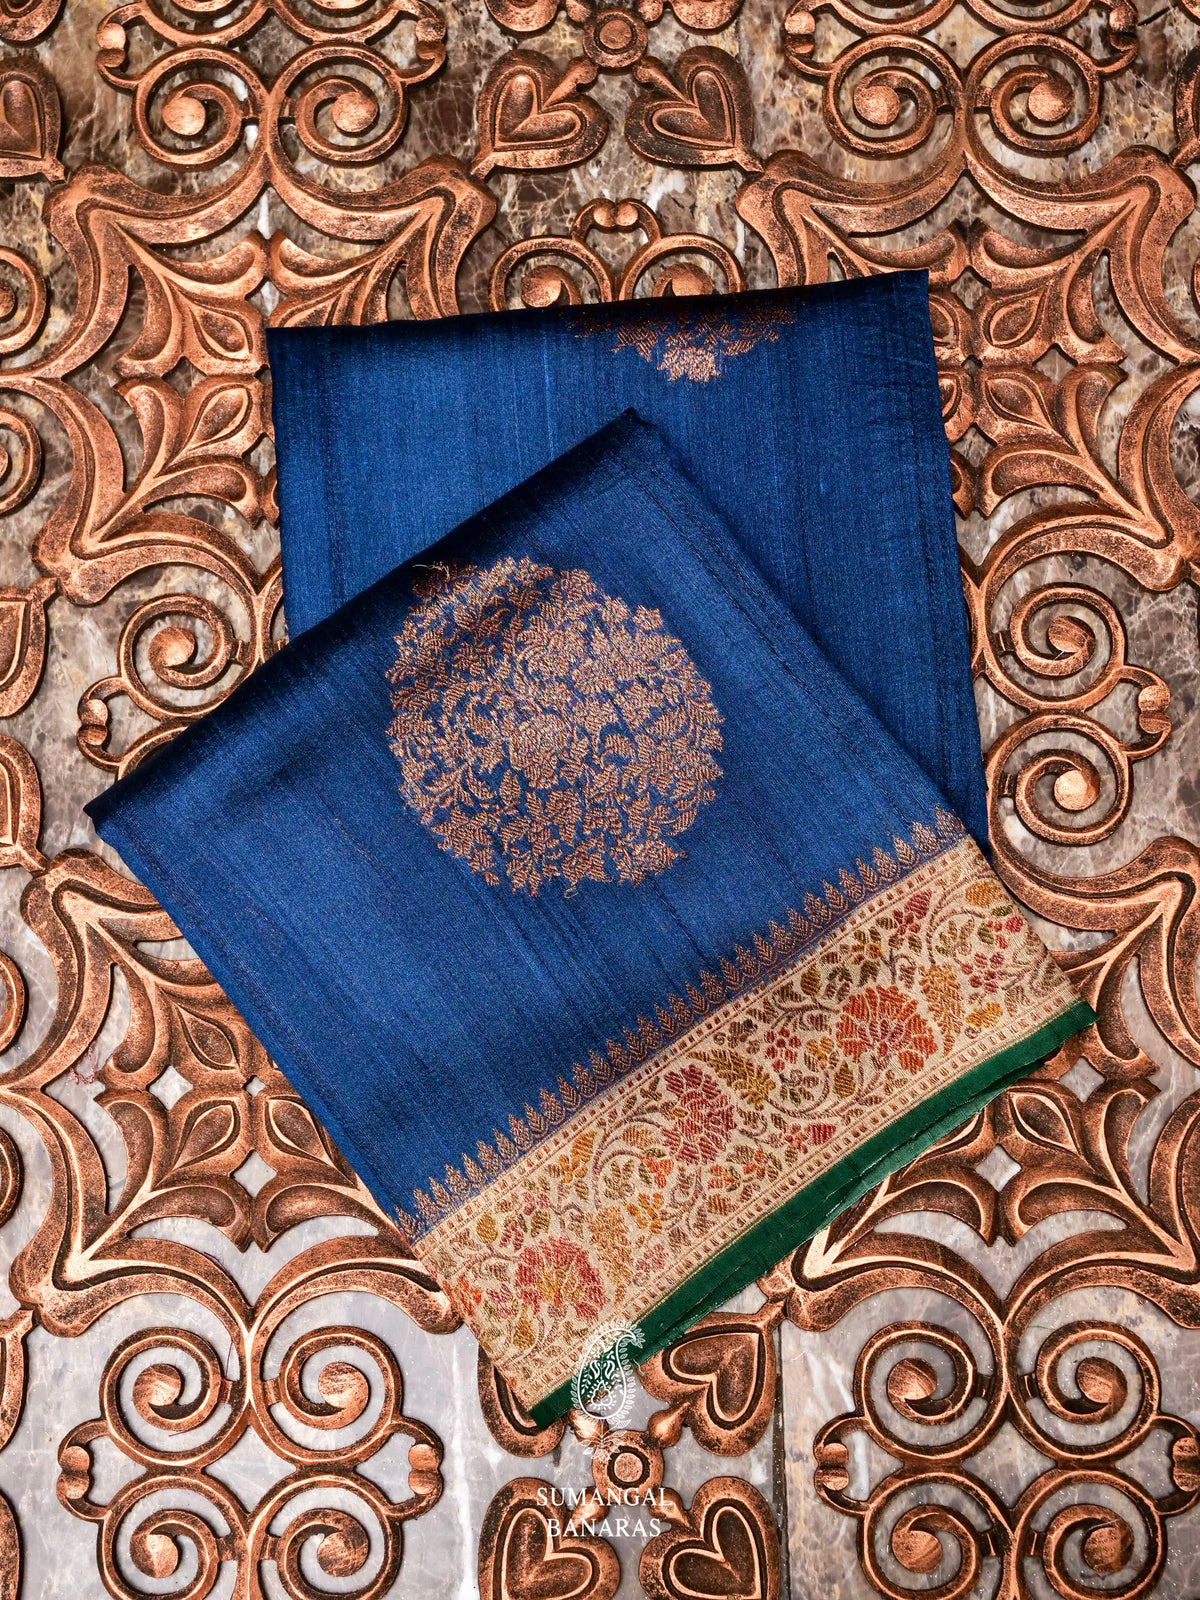 Handwoven Teal BLue Banarasi Tussar Silk Saree